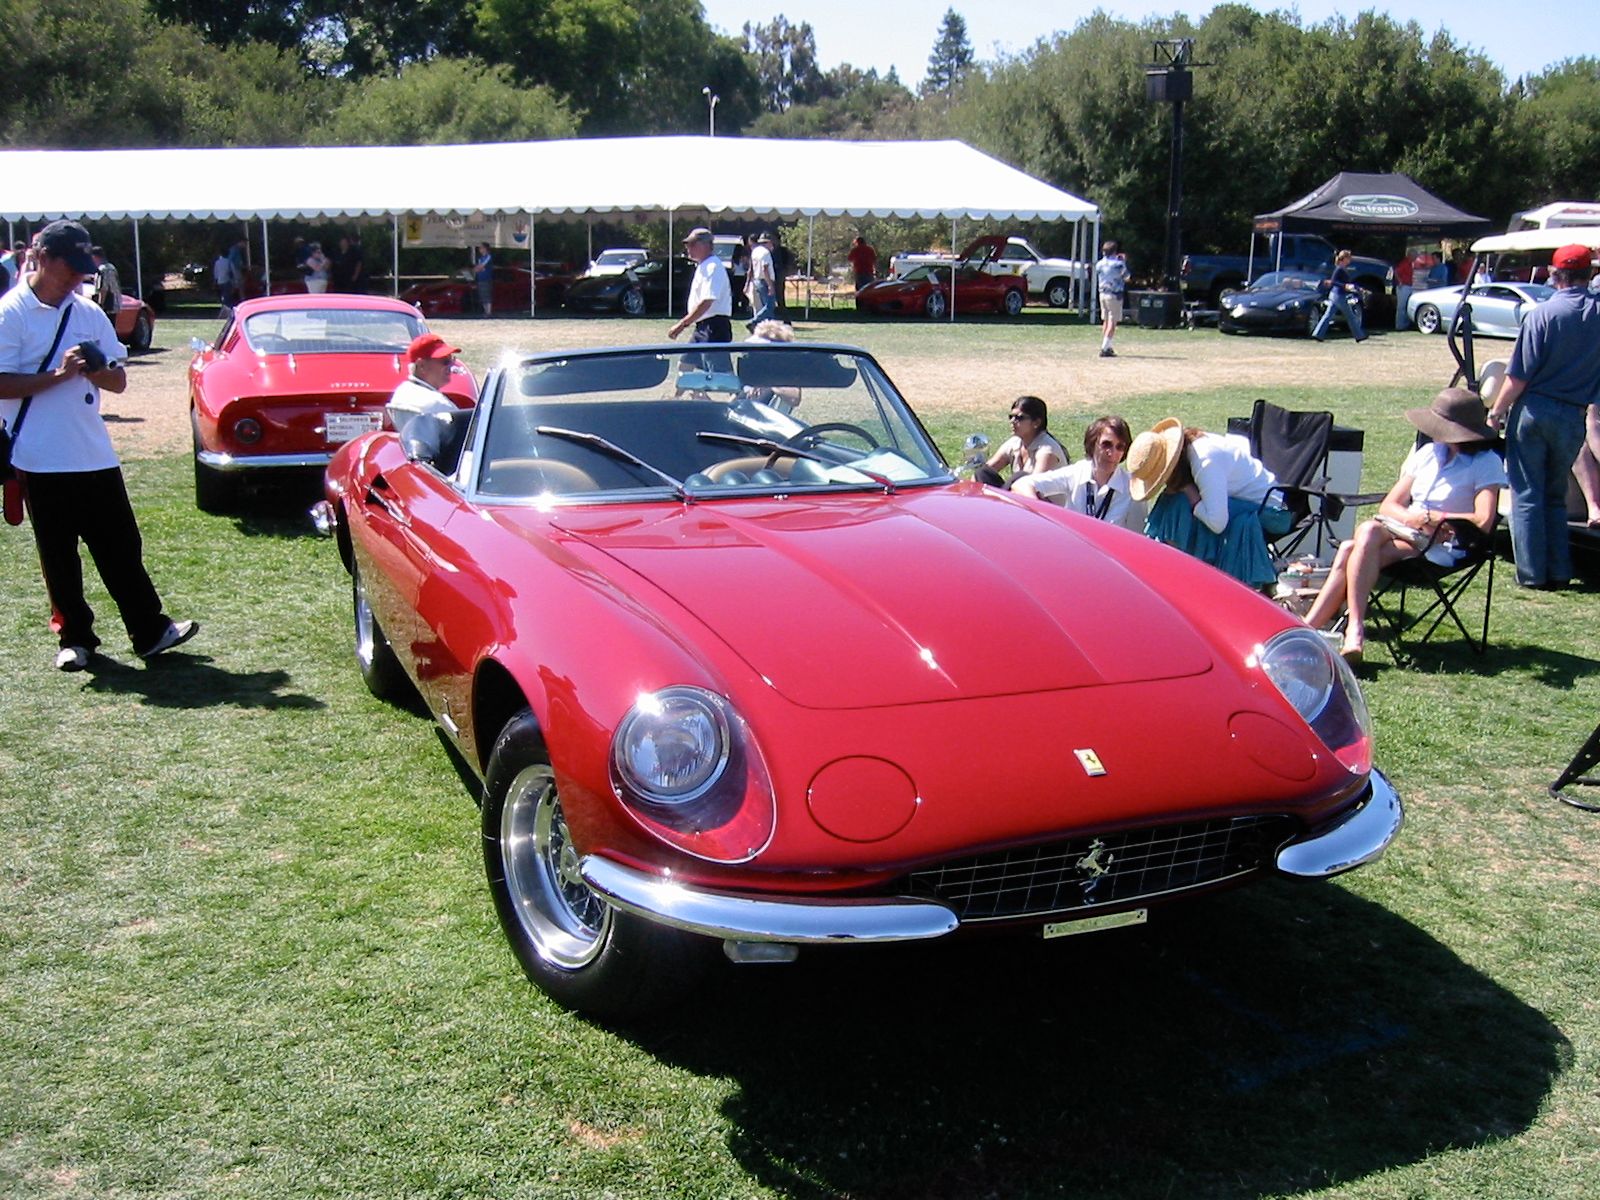 1966 Ferrari 365 California